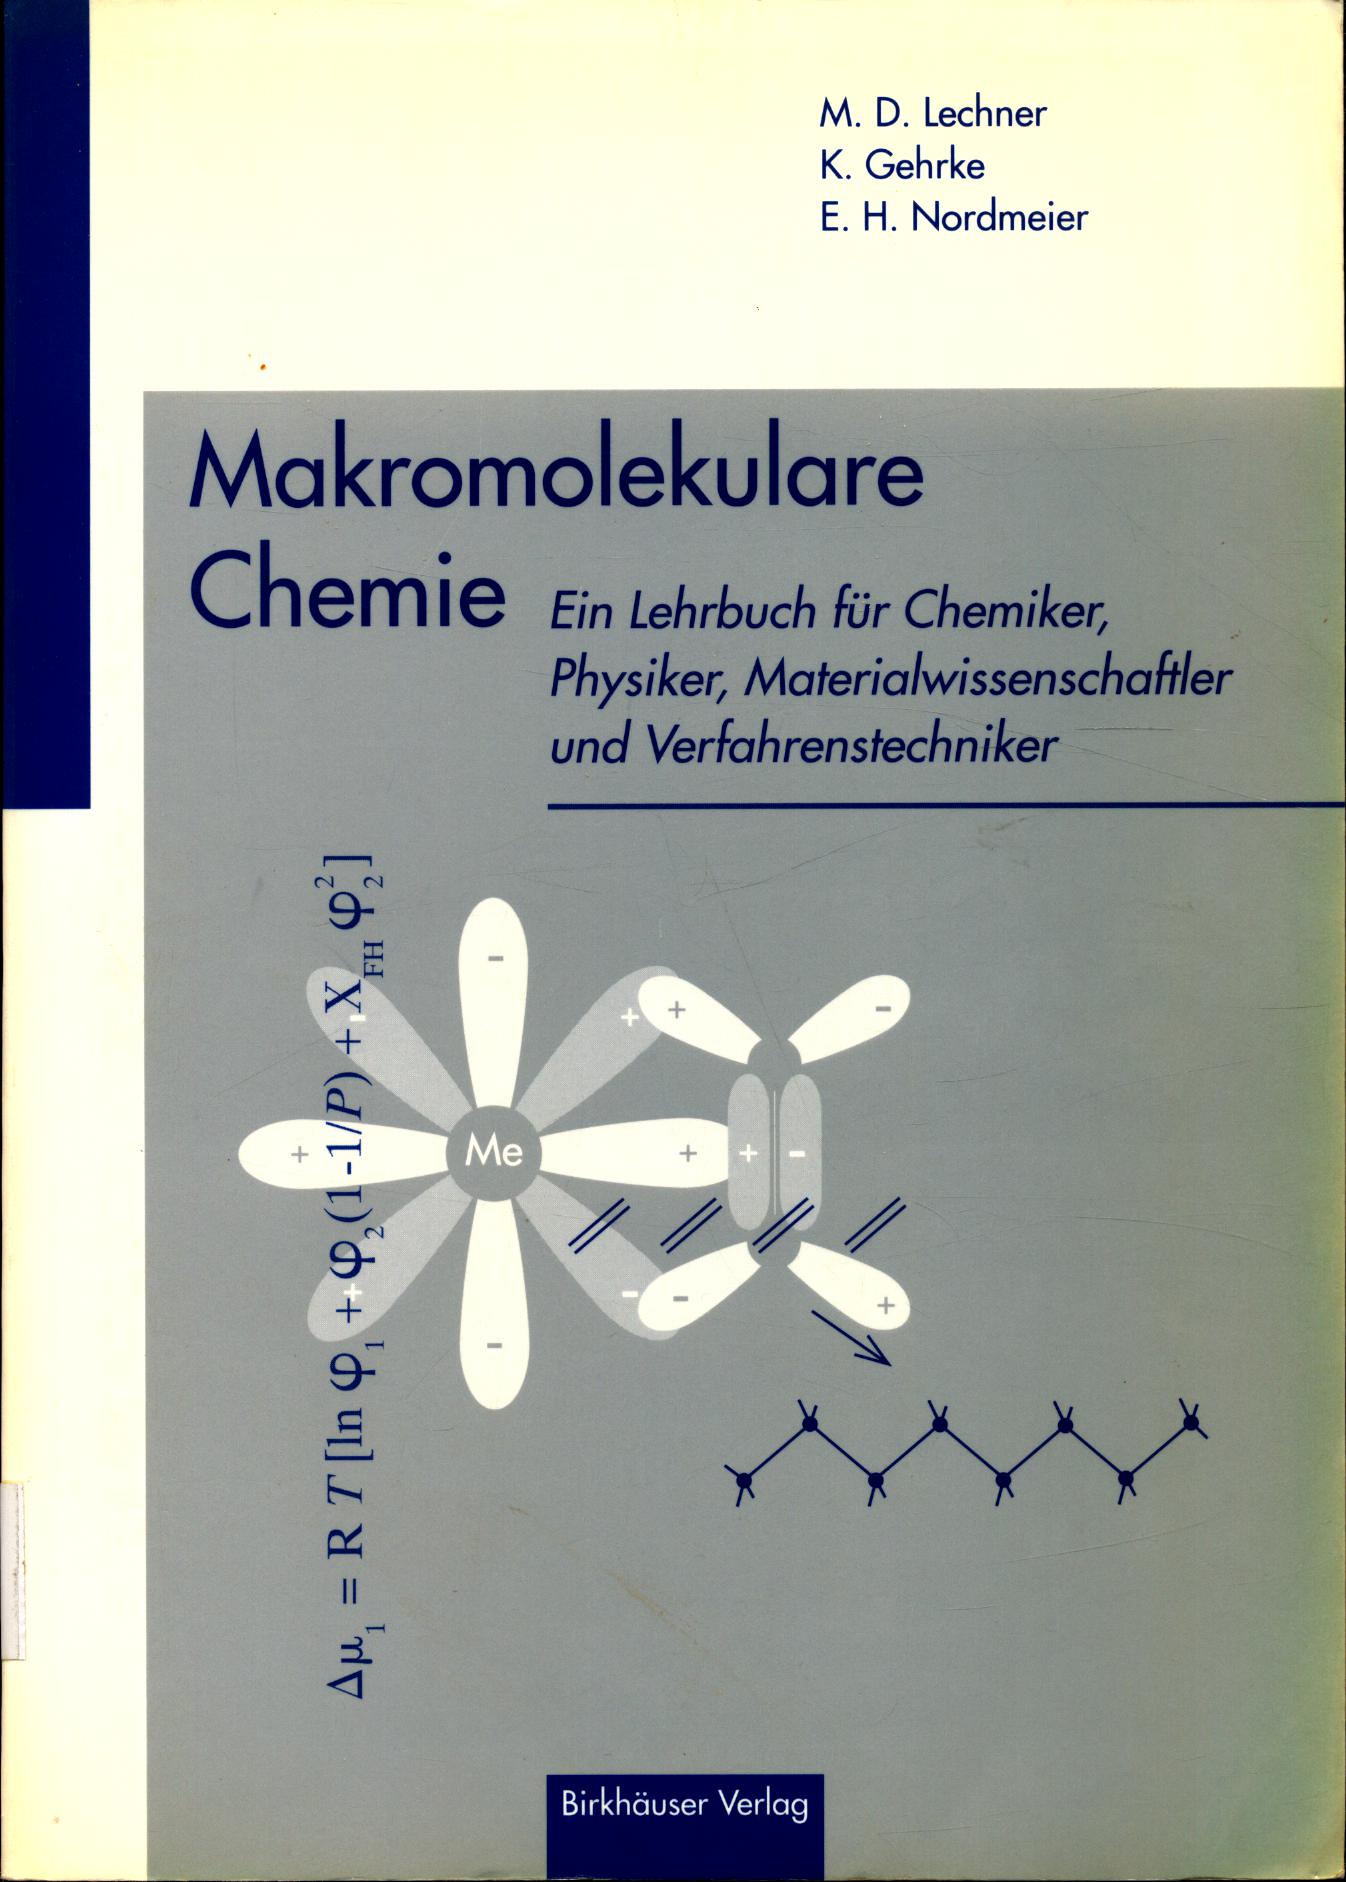 Makromolekulare Chemie Ein Lehrbuch für Chemiker Physiker Materialwissenschaftler und Verfahrenstechniker - Lechner, Manfred D., Klaus Gehrke und Eckhard Nordmeier